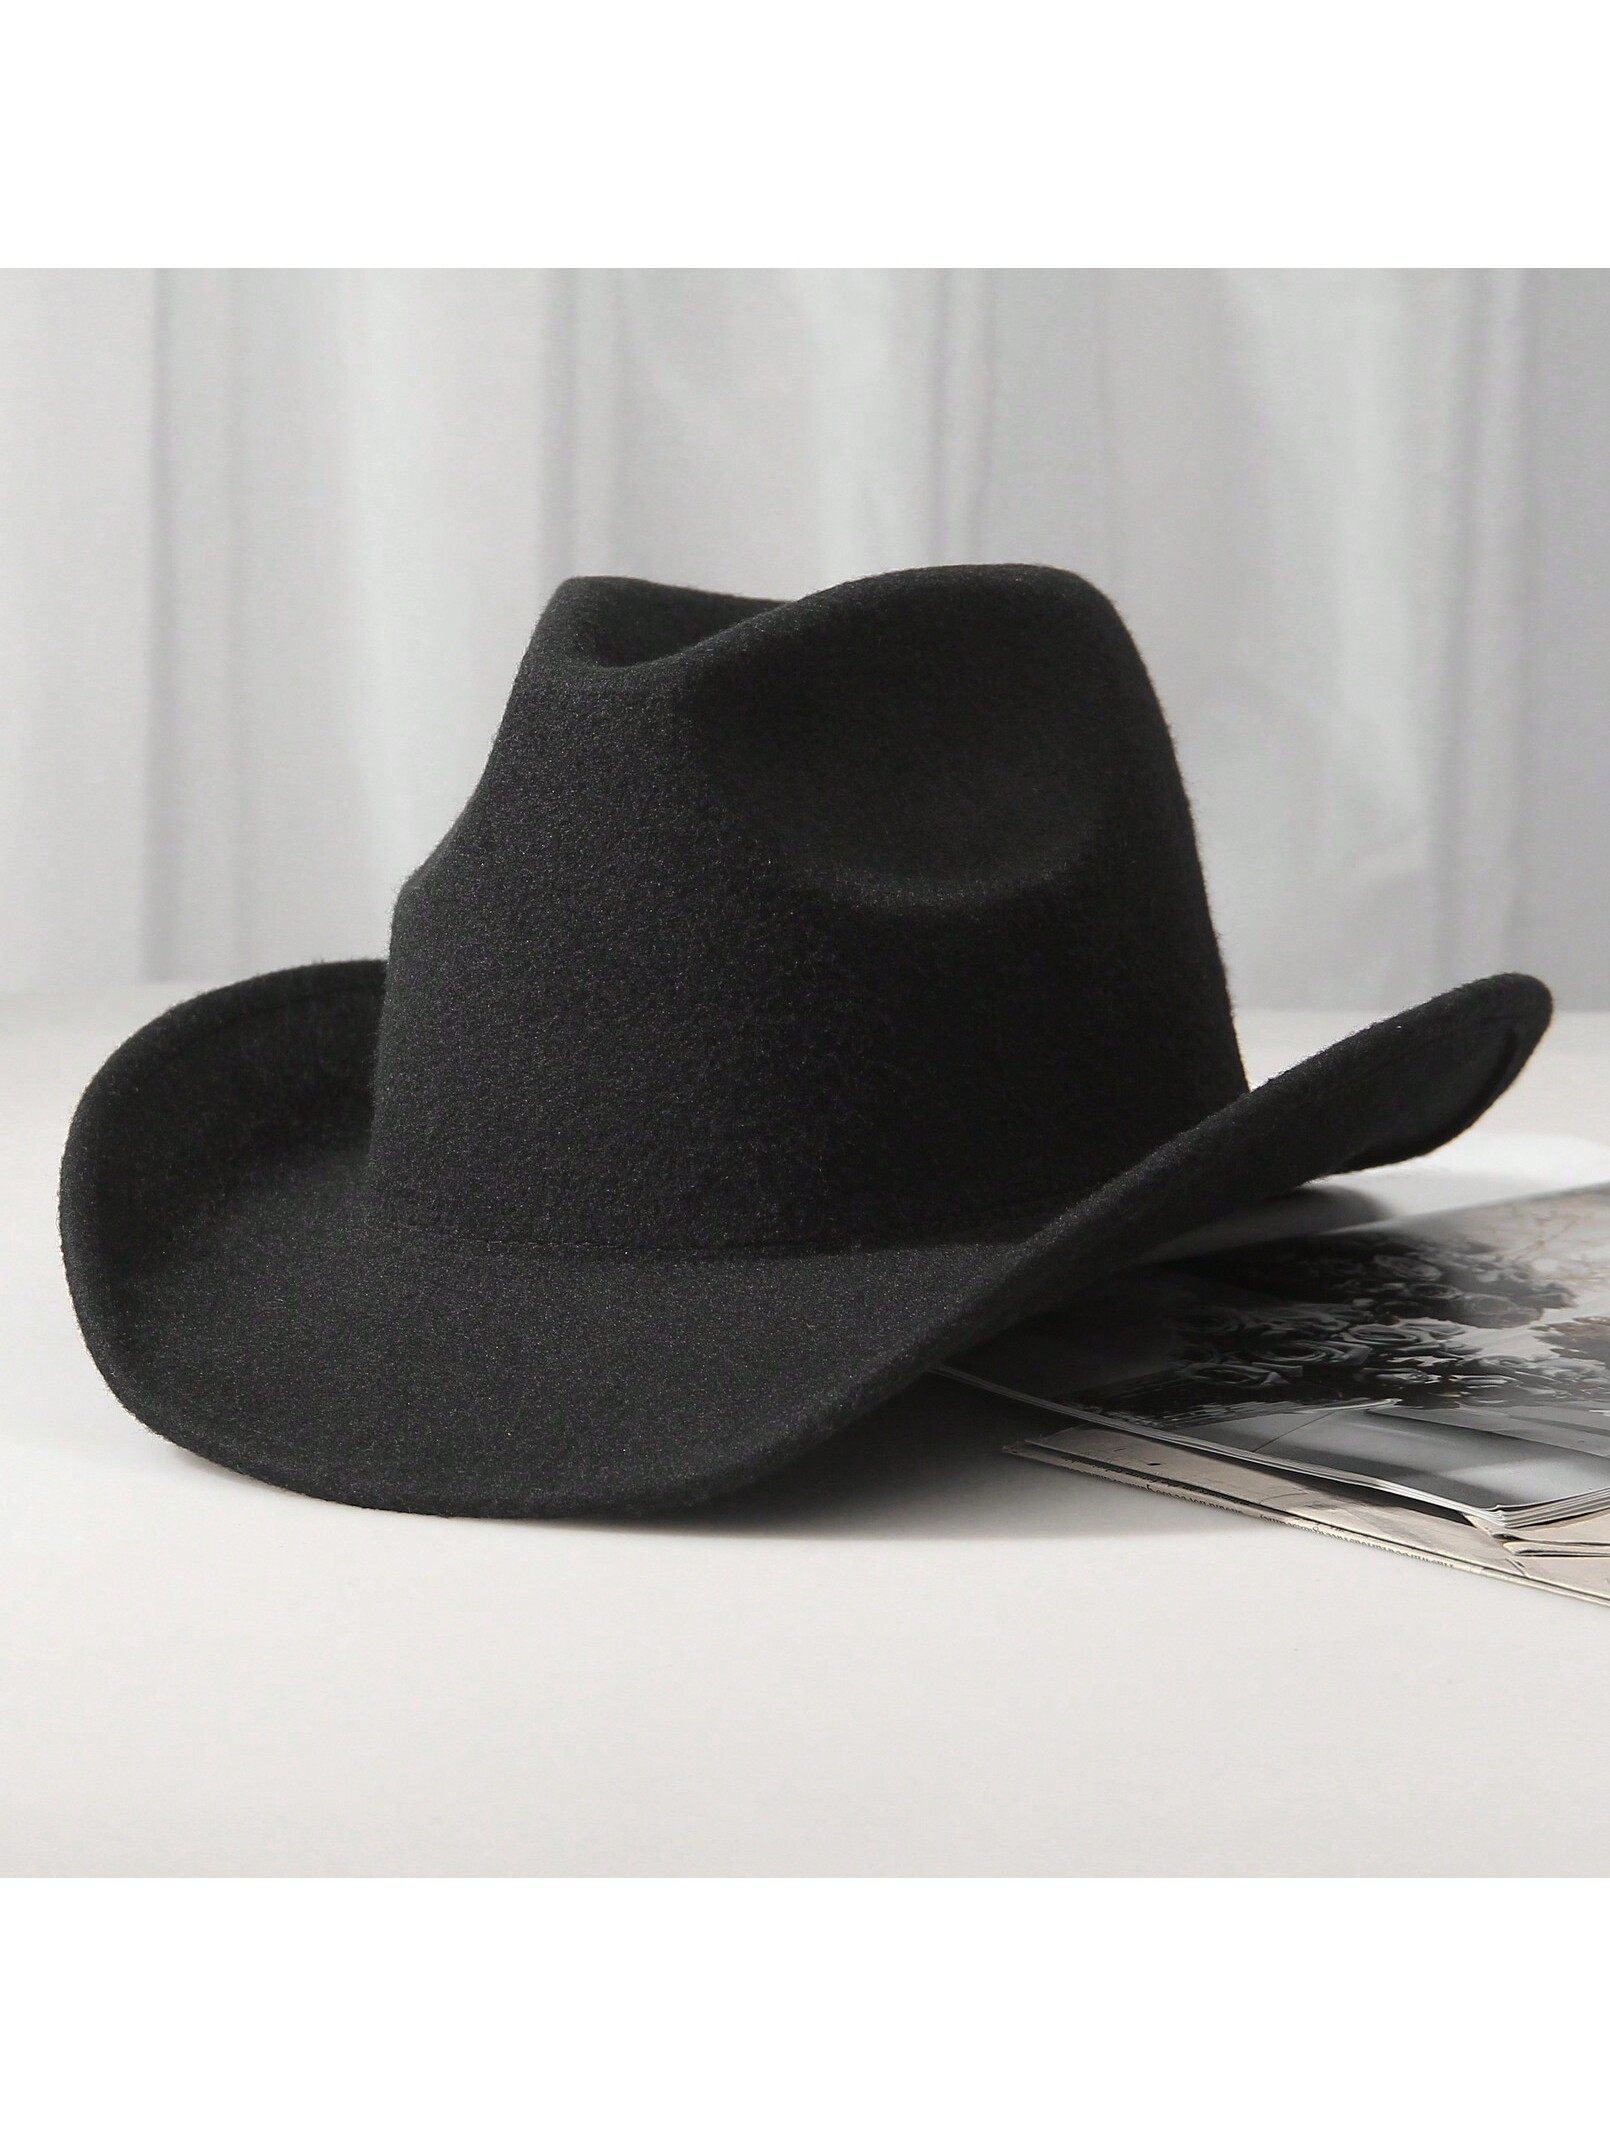 ковбойская шляпа настоящий ковбой детская набор 10 шт 1шт унисекс шерстяная ковбойская шляпа-ковбойская шляпа в западном стиле черная ковбойская шляпа, черный